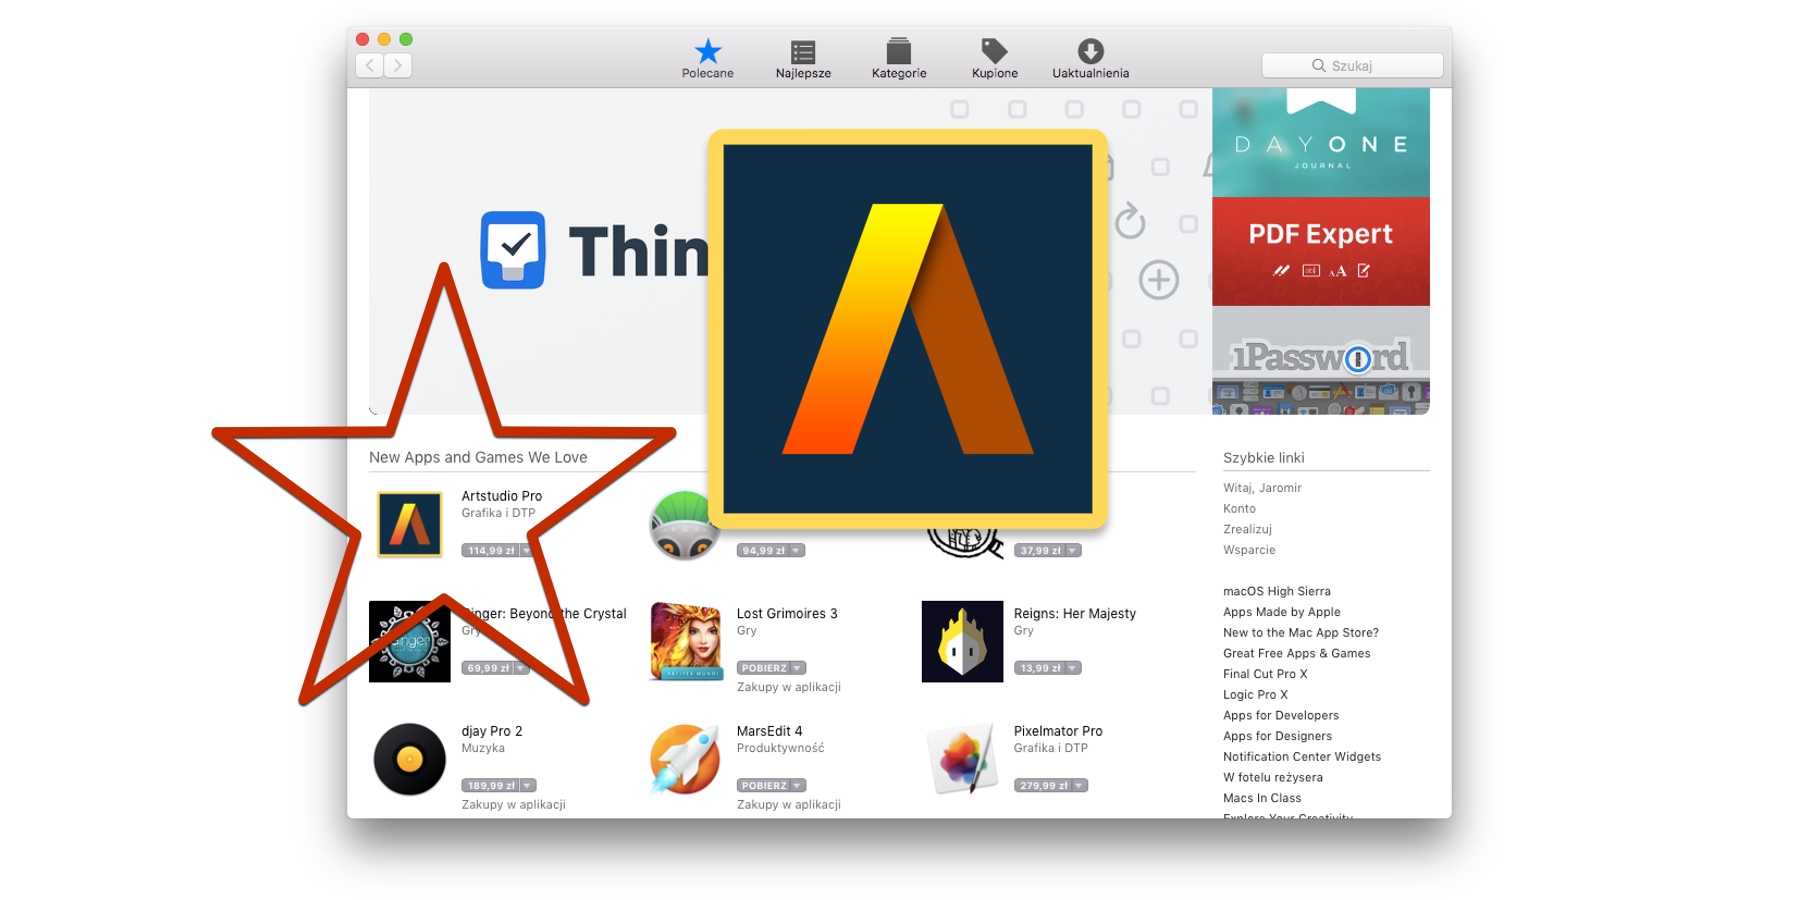 Artstudio Pro na iOS i macOS wyróżnione i w obniżonej cenie